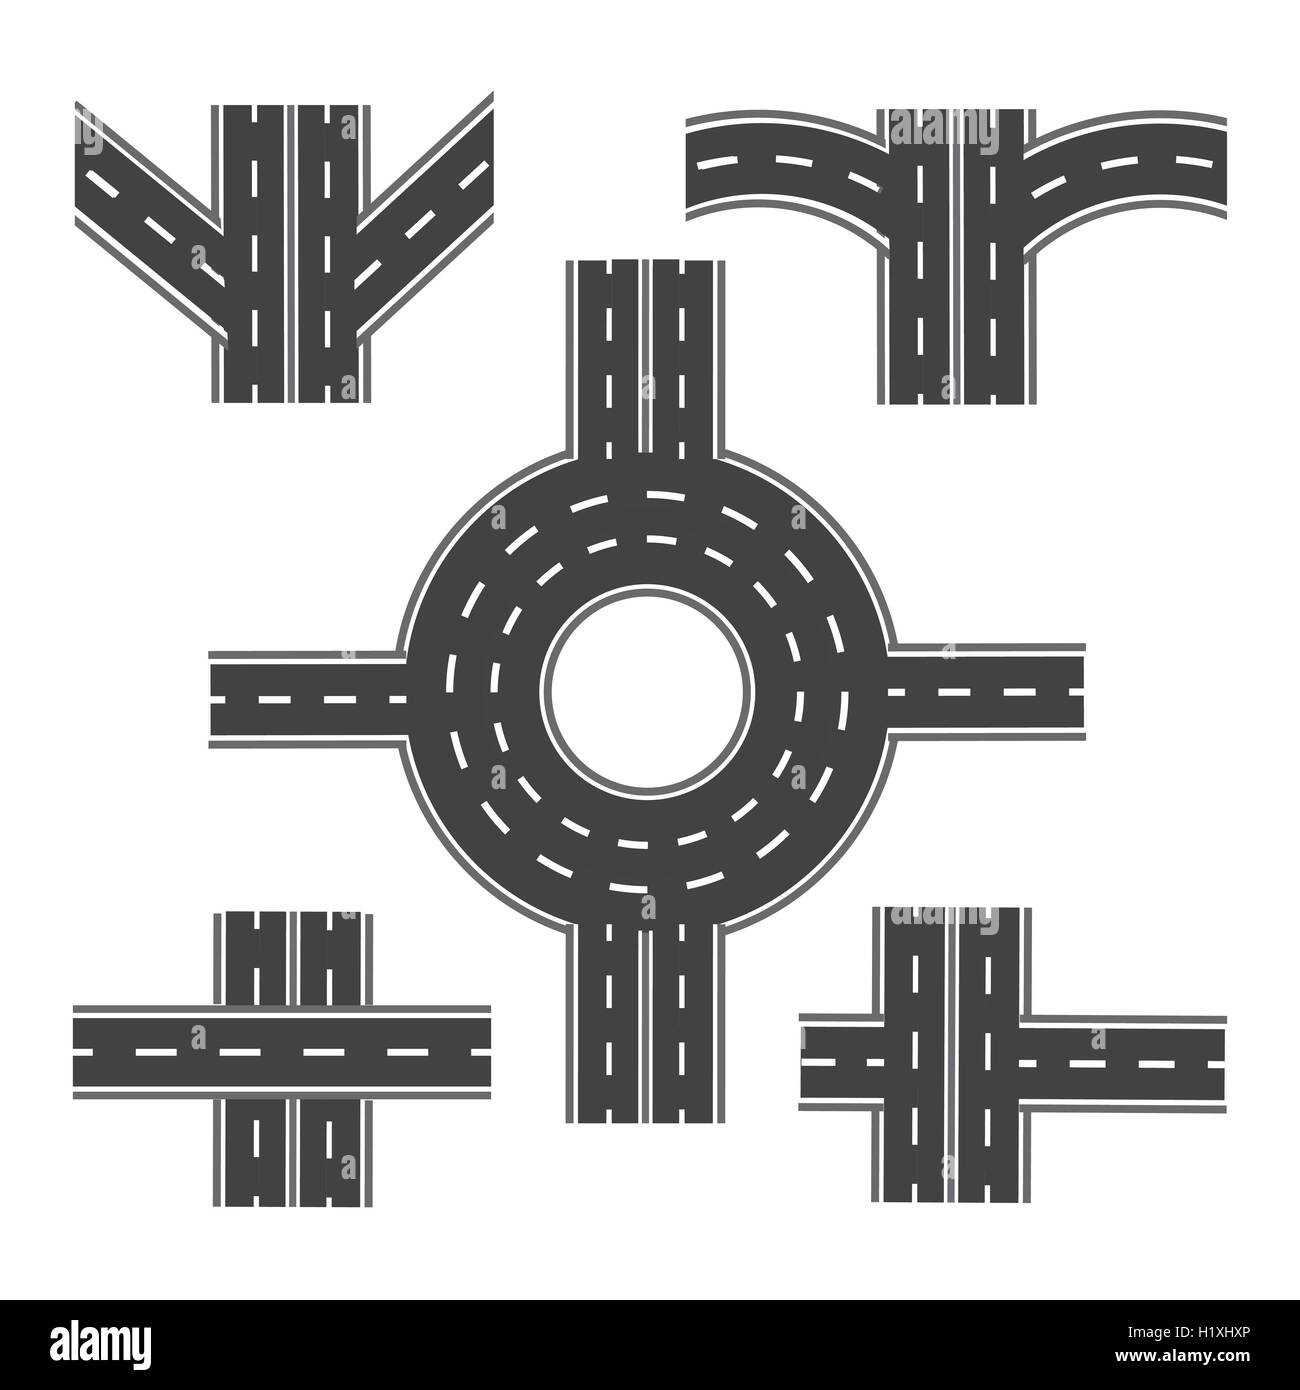 Satz von verschiedenen Straßenabschnitten mit verschiedenen Kreuzungen und Kreisverkehre. Abbildung Stock Vektor